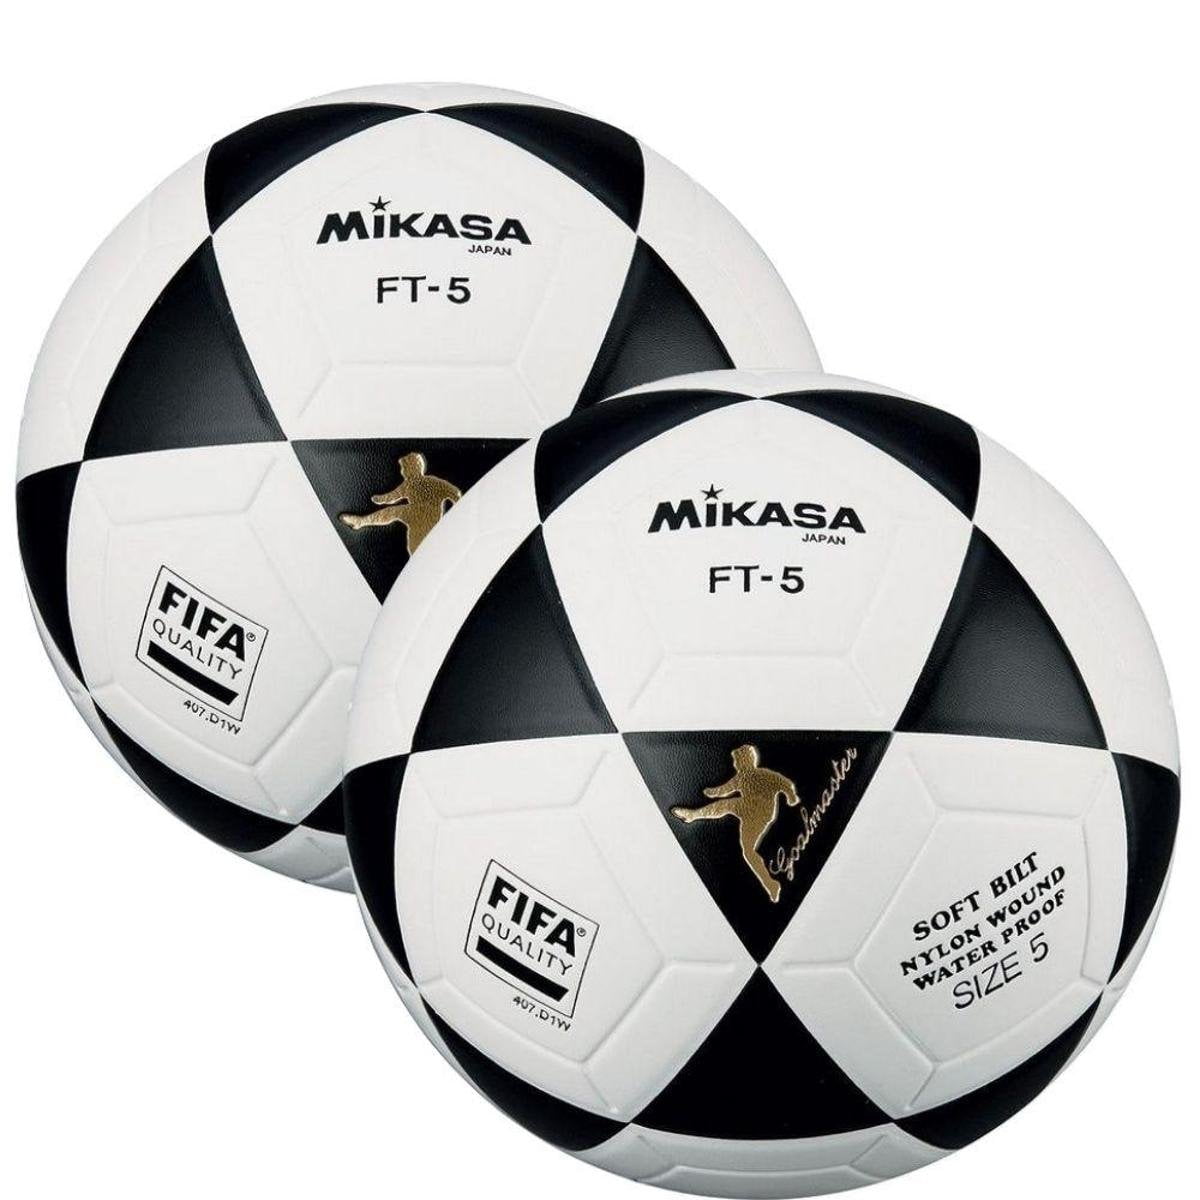 Balón Fútbol Runic Nro 5 Goal Master 2 Pack 